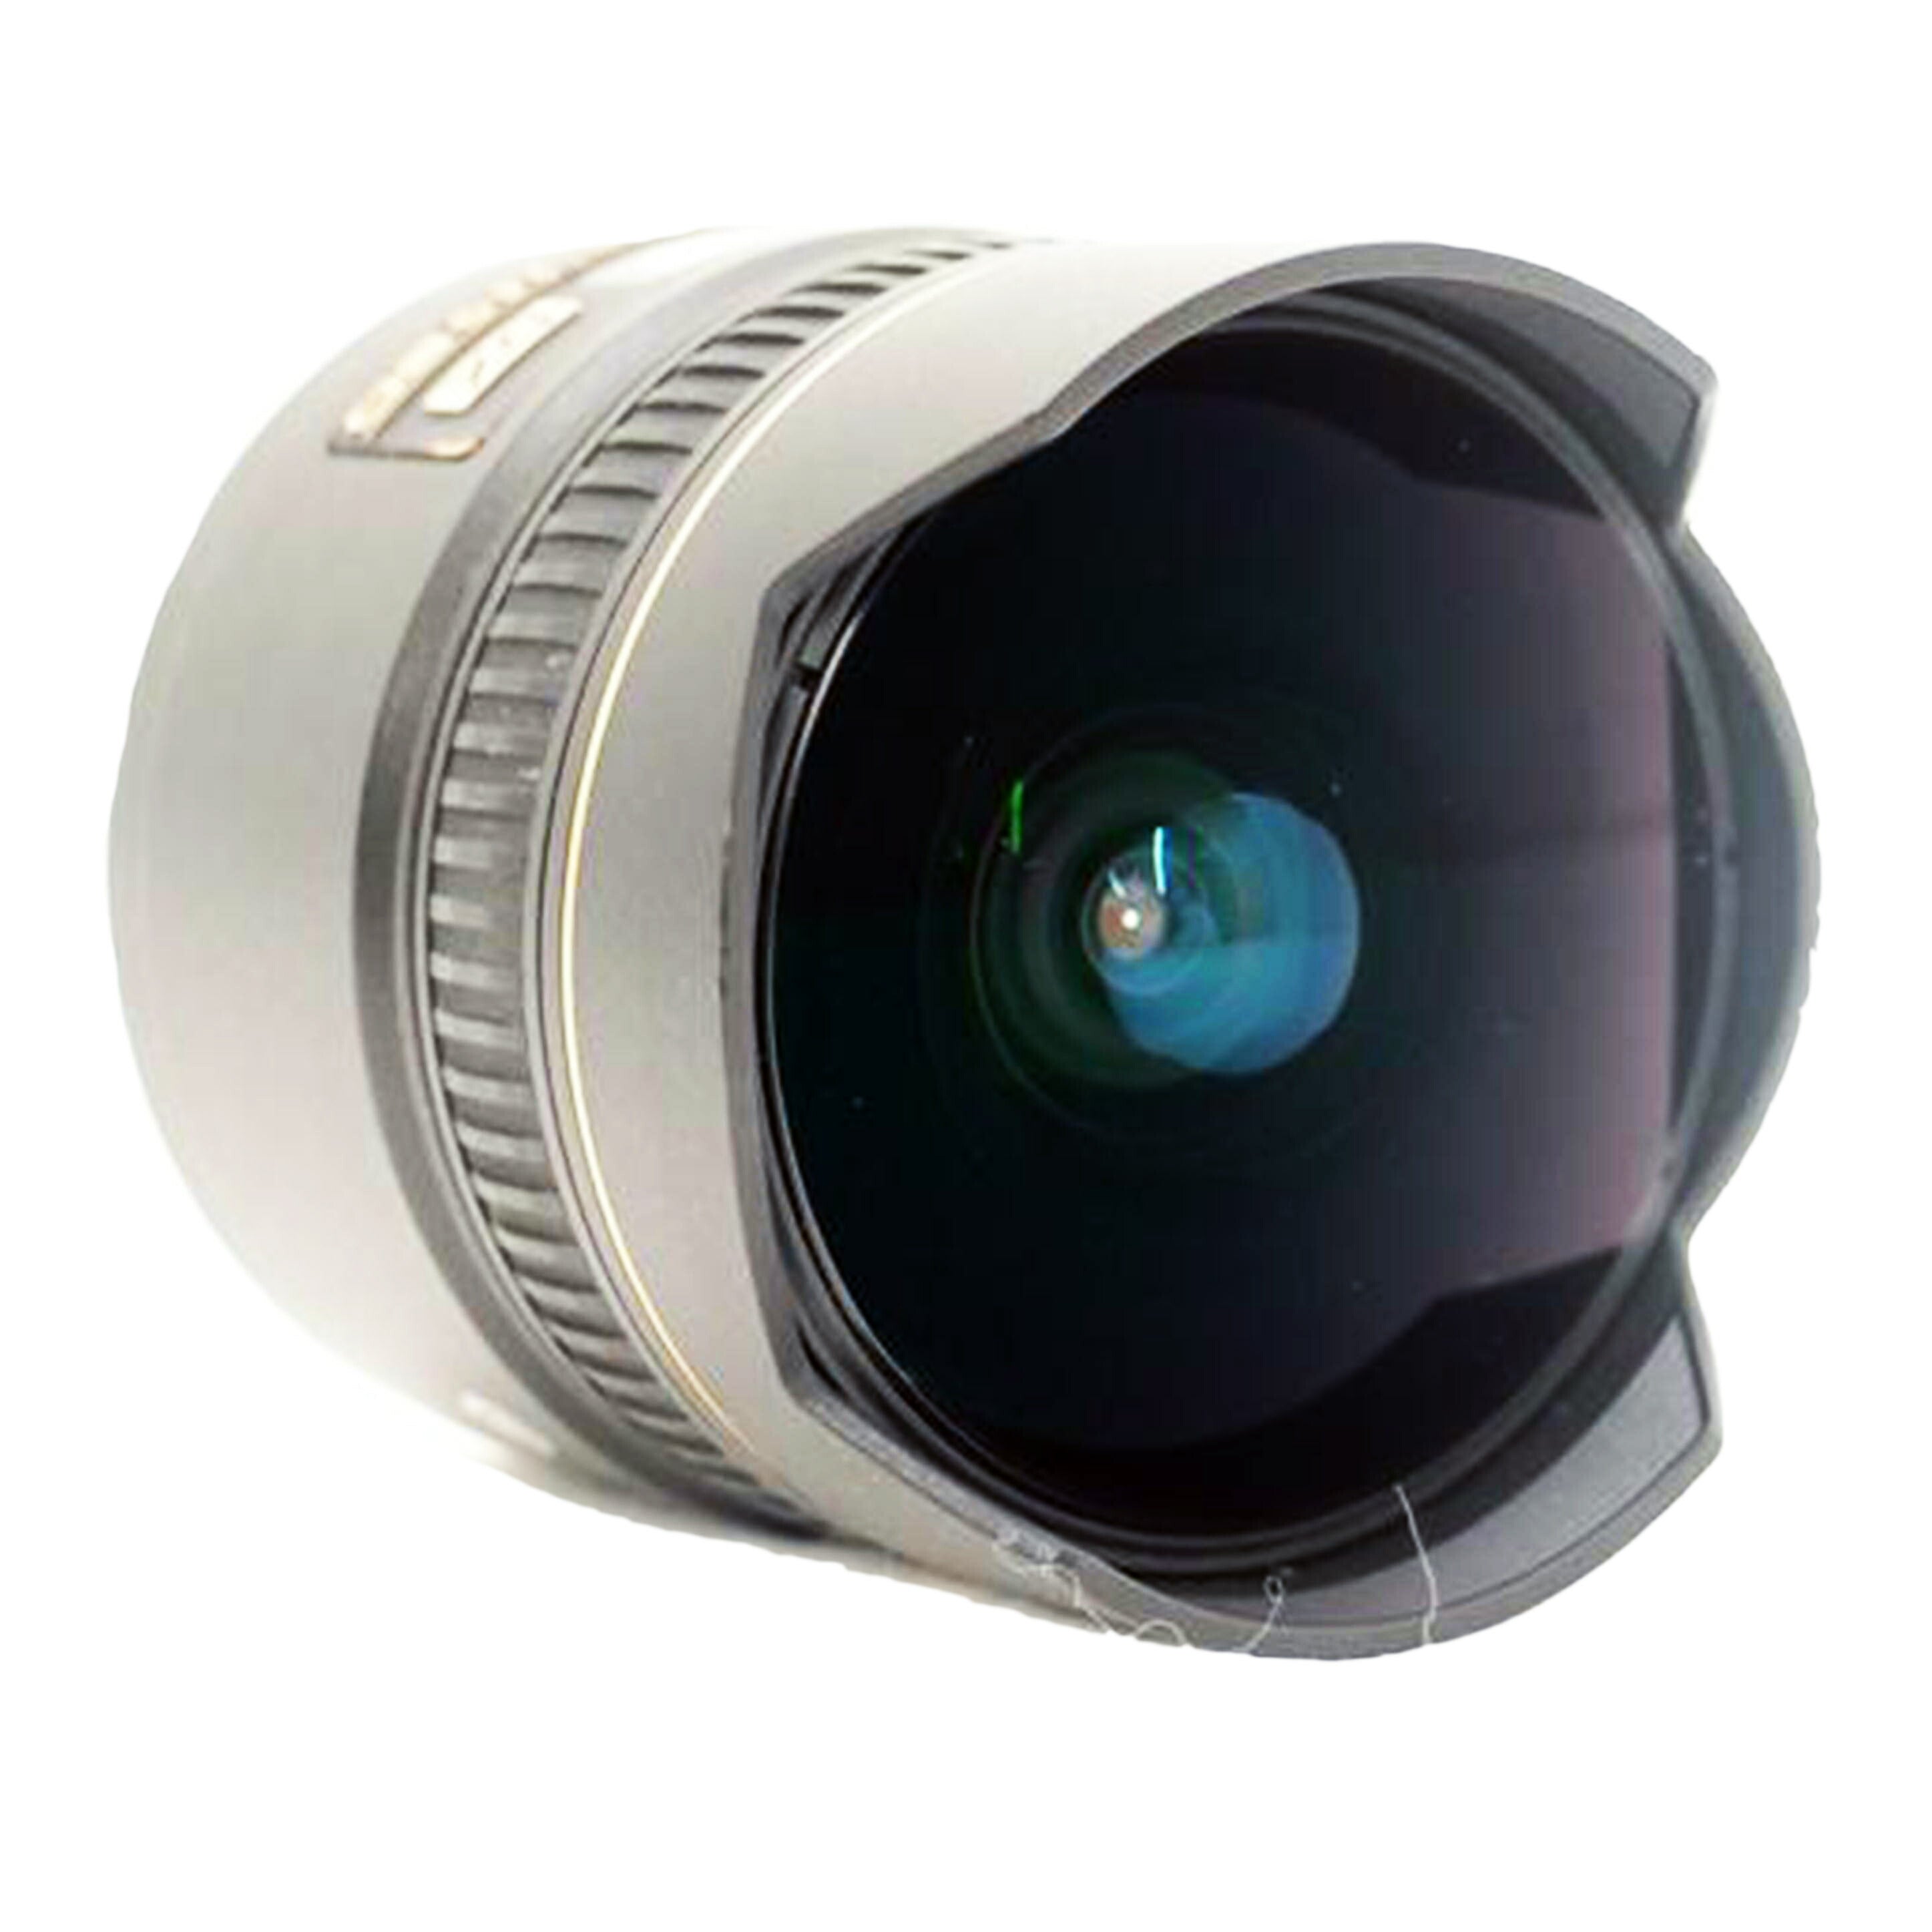 Ｎｉｋｏｎ ニコン/単焦点レンズ/AF DX Fisheye-Nikkor 10.5mm f/2.8G ED//385416/ABランク/69